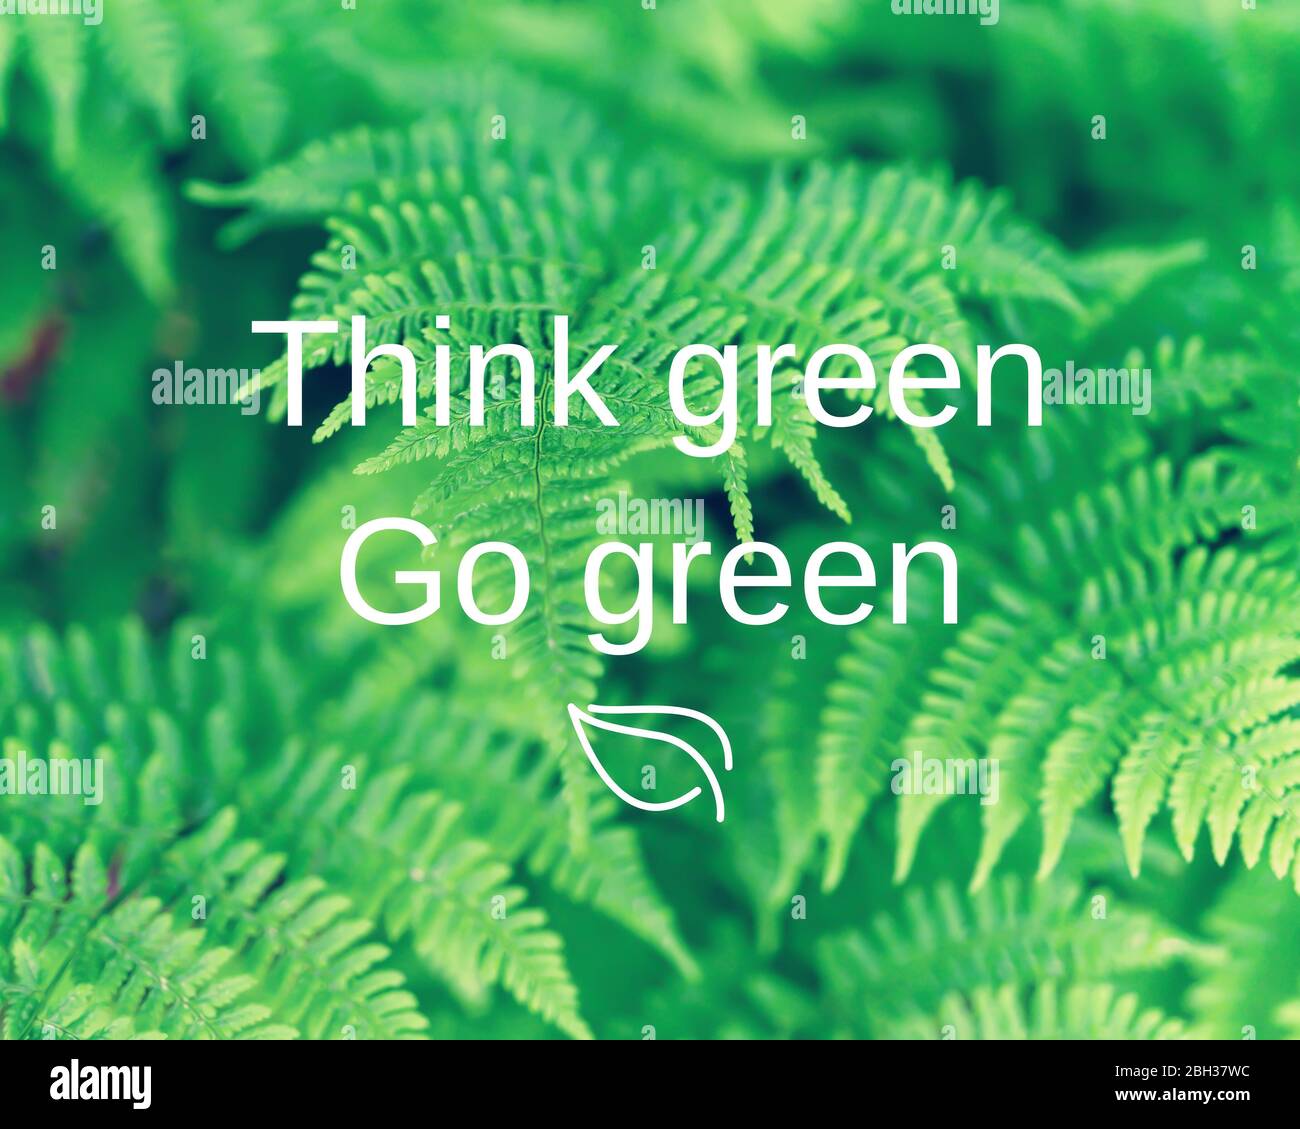 Citation typographique inspirée – pensez vert Go green, sur fond de bois de fougères. Banque D'Images